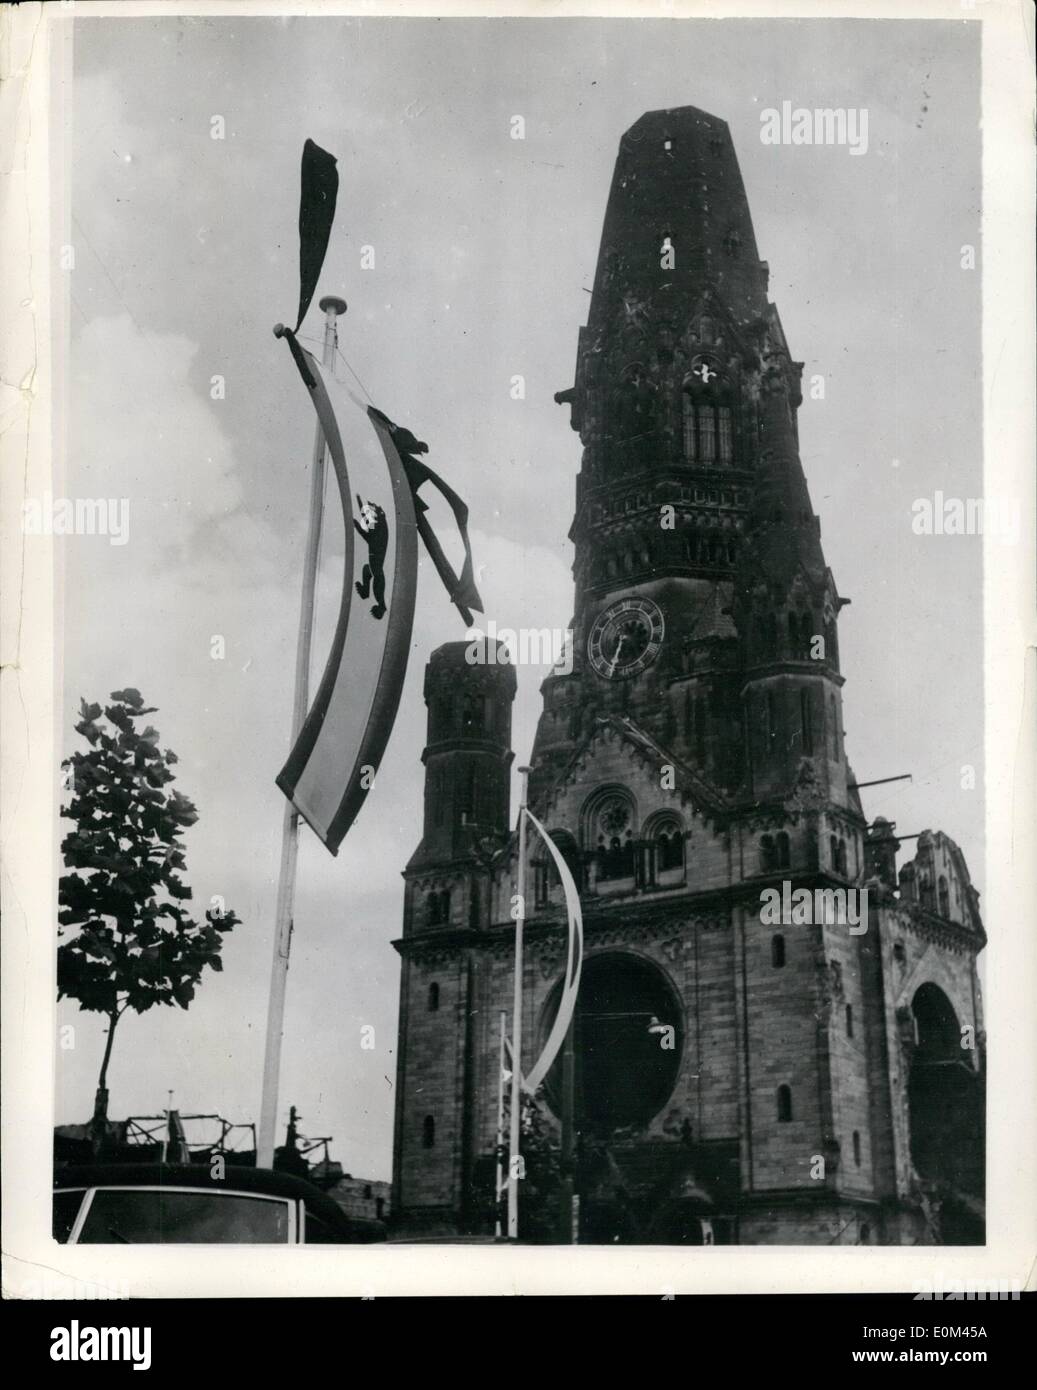 Juin 06, 1953 - Hommage à l'Allemagne de l'Ouest à moitié mort drapeaux émeutiers- mât. : Le Dr ADENAUER, chancelier de l'Allemagne de l'Ouest, a ordonné à tous les drapeaux sur les édifices publics tout au long de la République d'être mis en berne pendant trois jours, en mémoire de ceux tués au cours de l'Allemagne de l'émeute. La photo montre la vue des drapeaux en berne à Berlin. Banque D'Images